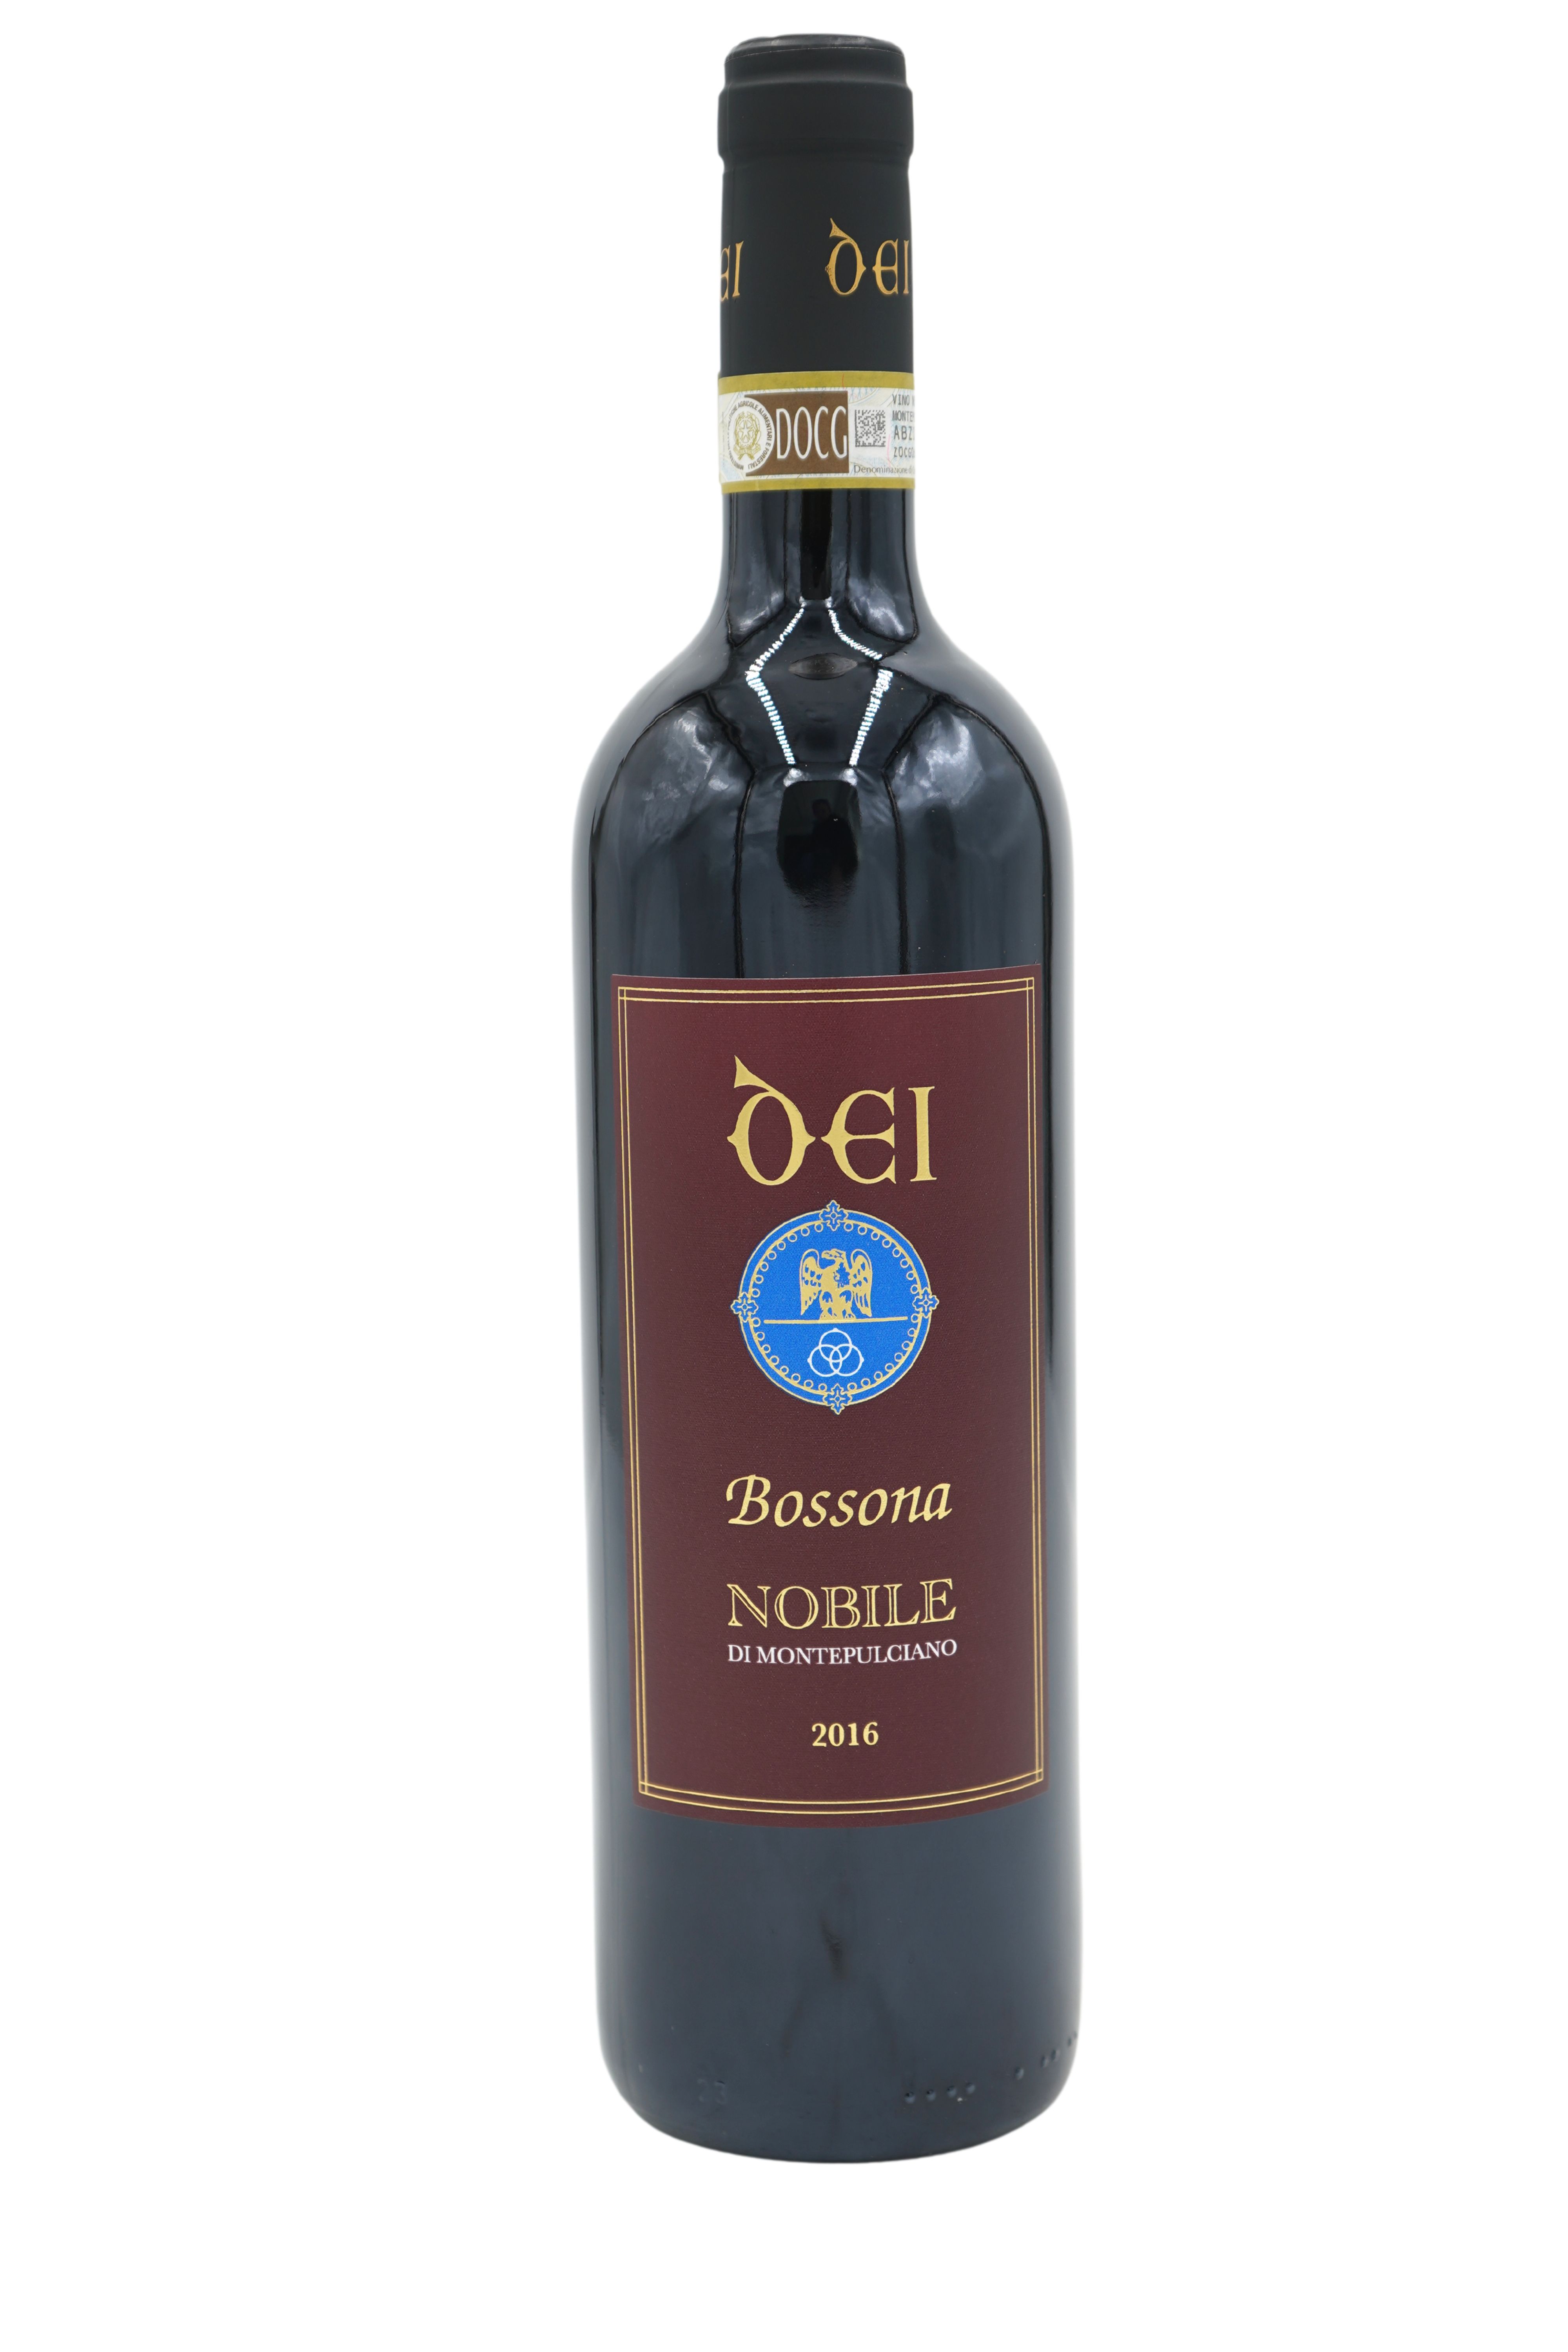 2016 Bossona Vino Nobile di Montapulciano Riserva